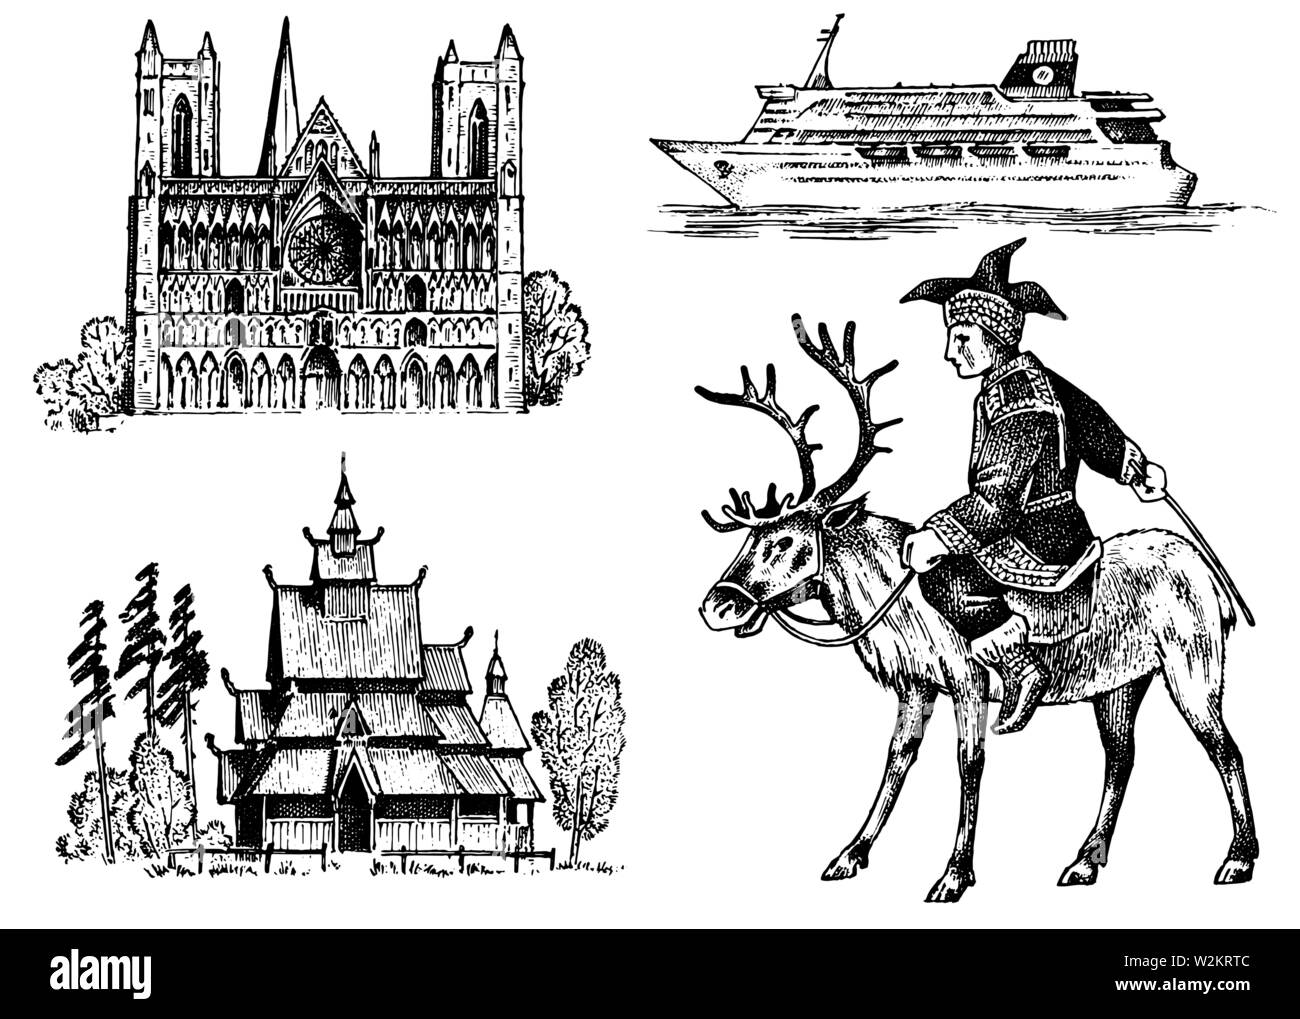 Norwegen Kultur. Nationale Symbole. Norwegische Kathedrale, Kirche aus Holz, Reiter im Kostüm, Schiff im Meer zu reisen. Hand graviert Skizze in Stock Vektor